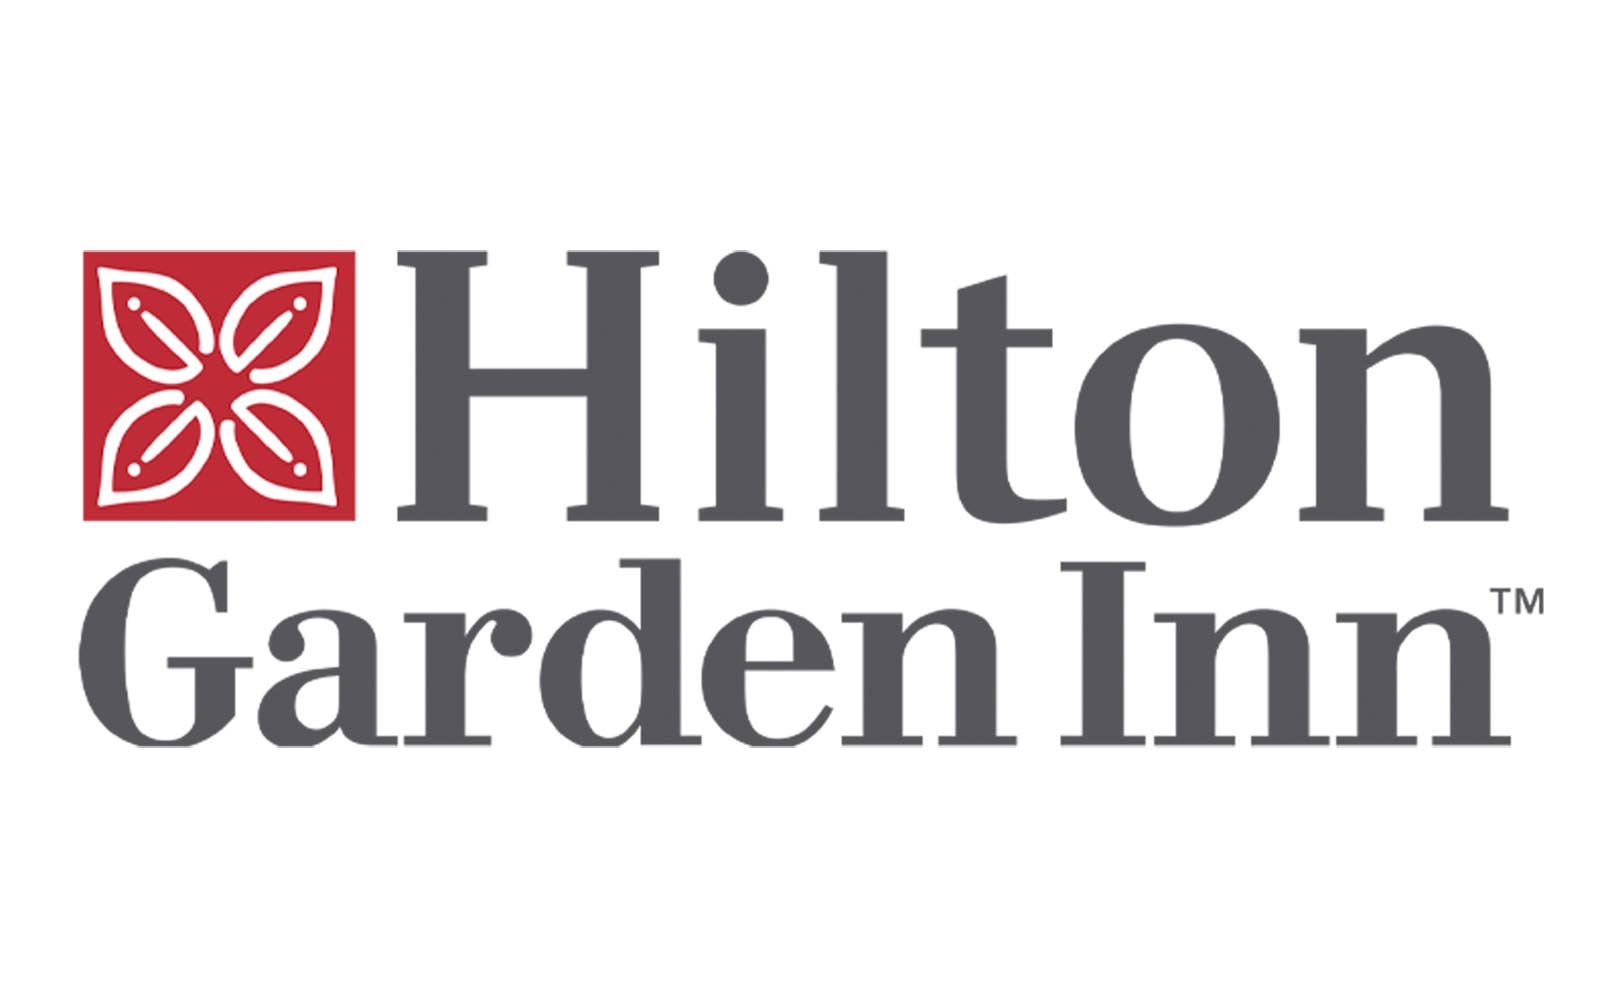 hilton garden inn logo flower